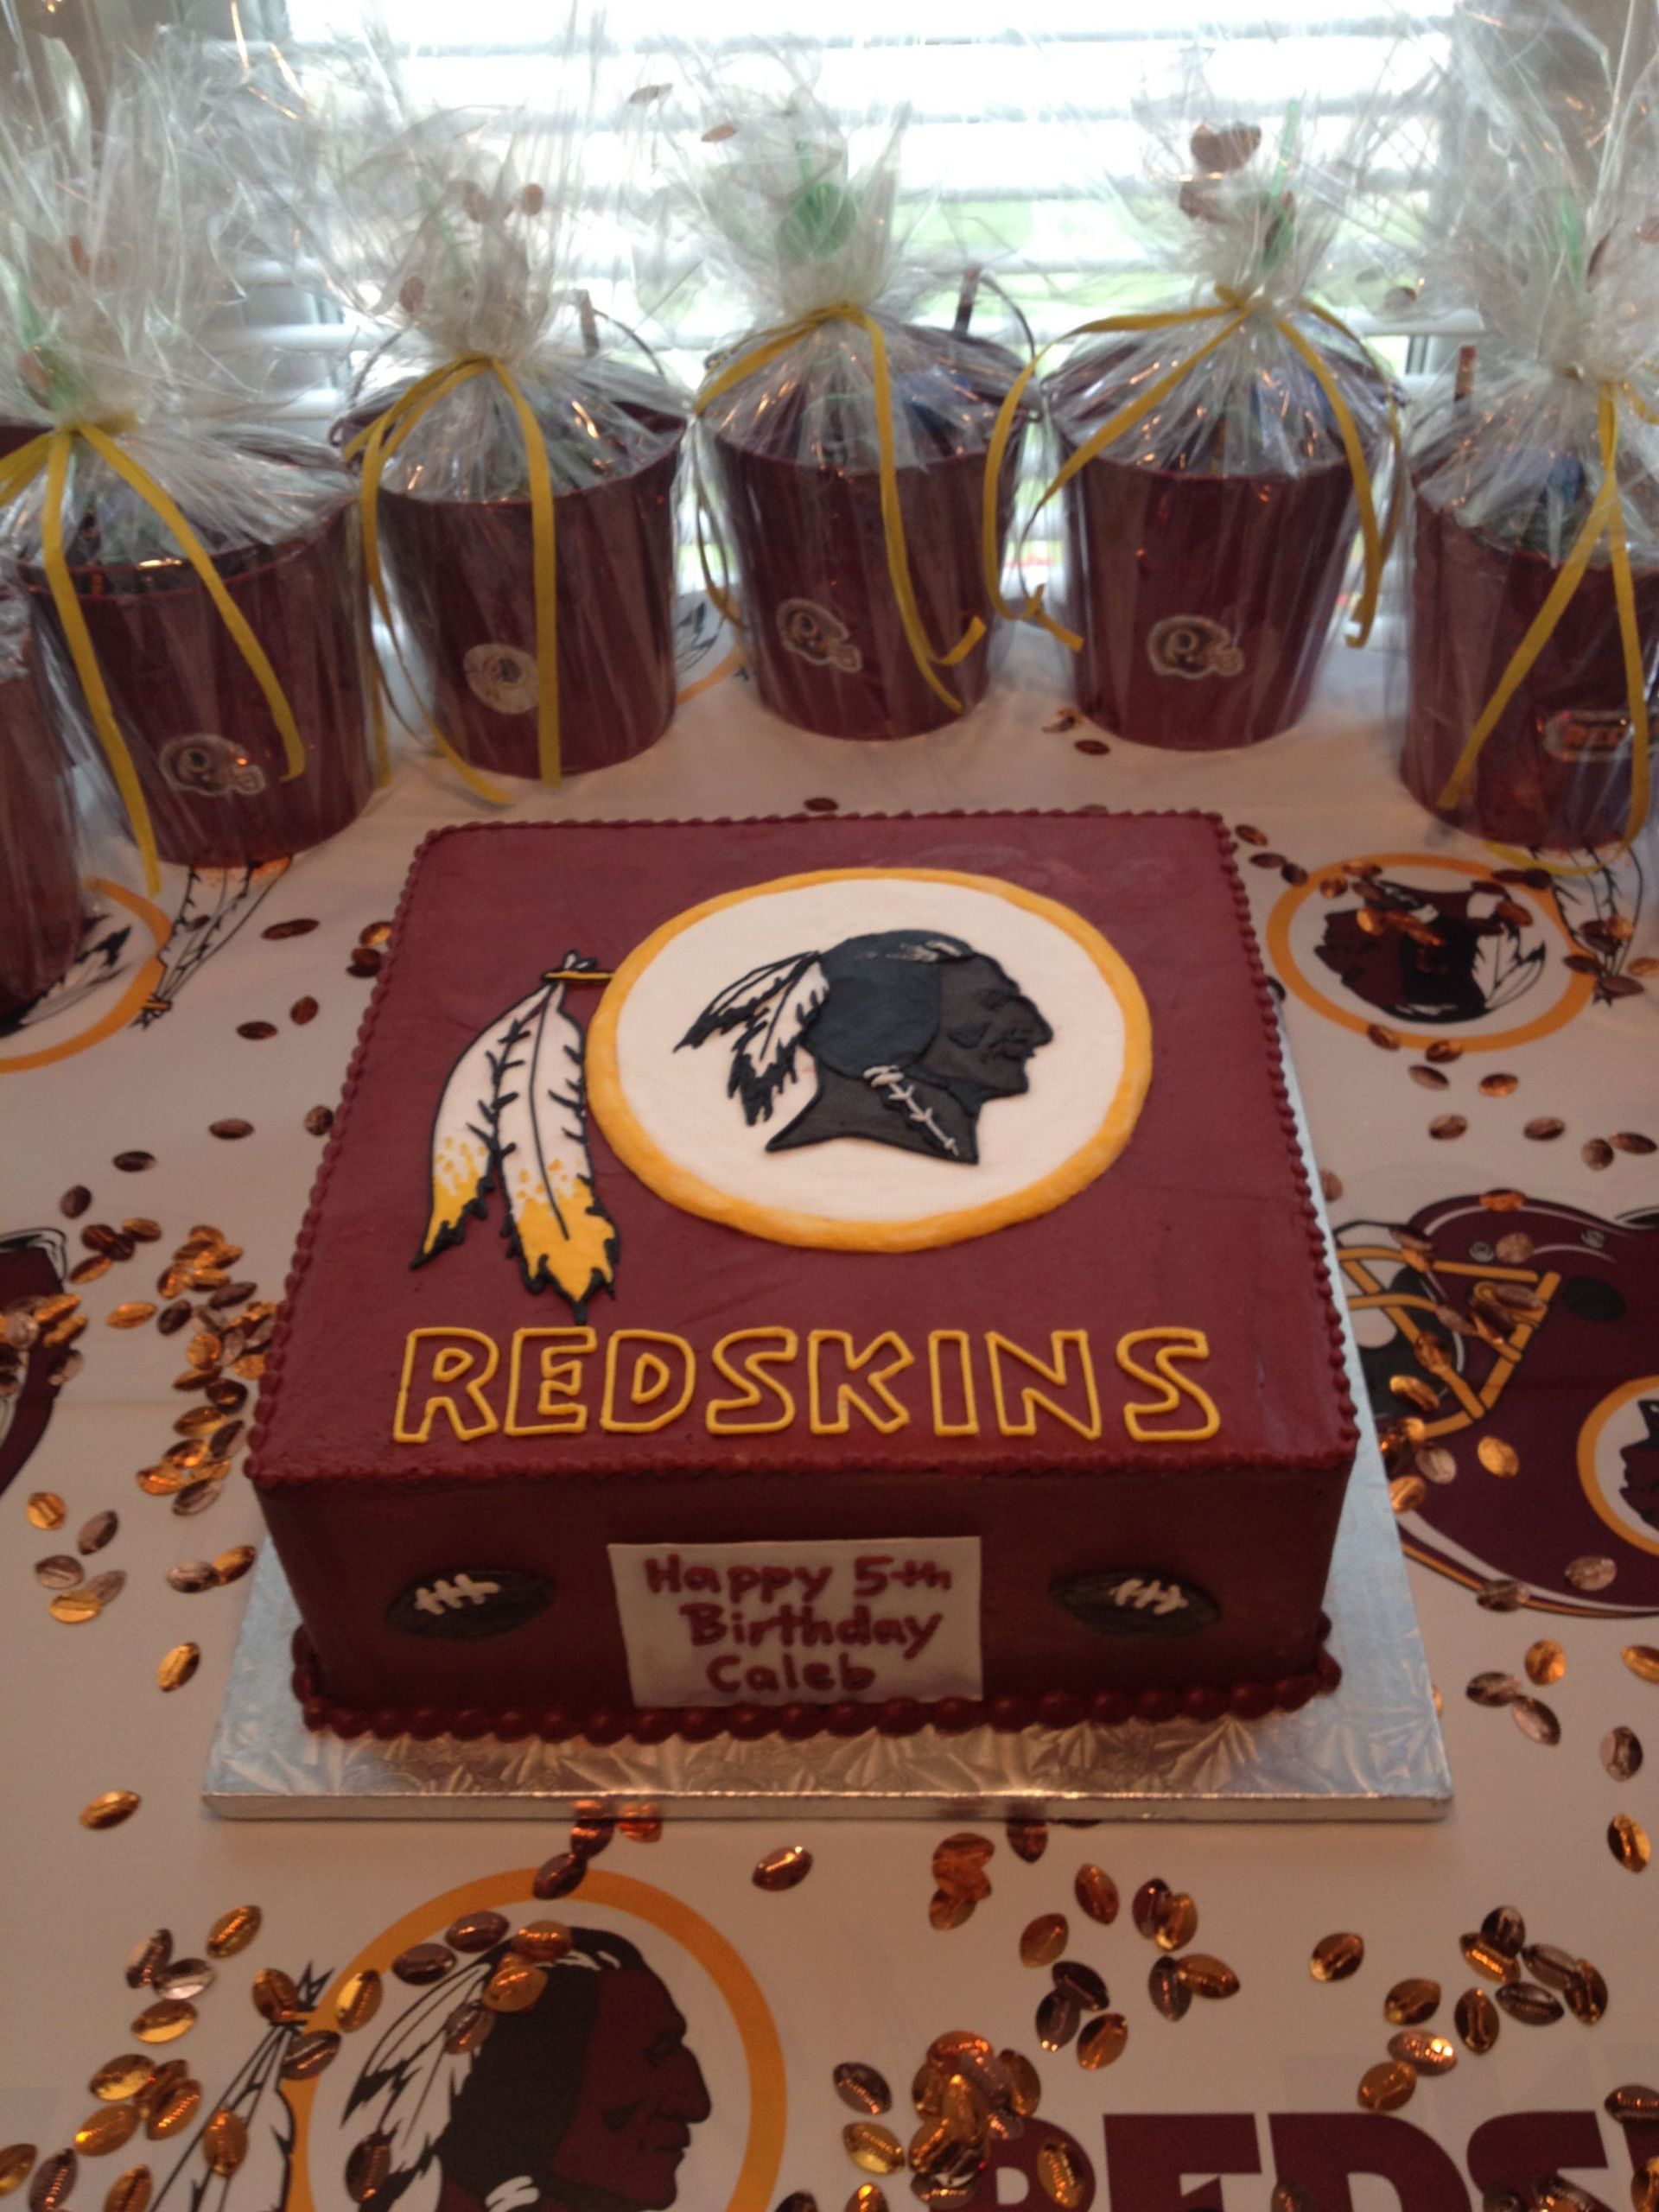 Redskins Birthday Cake
 Redskins Birthday cake